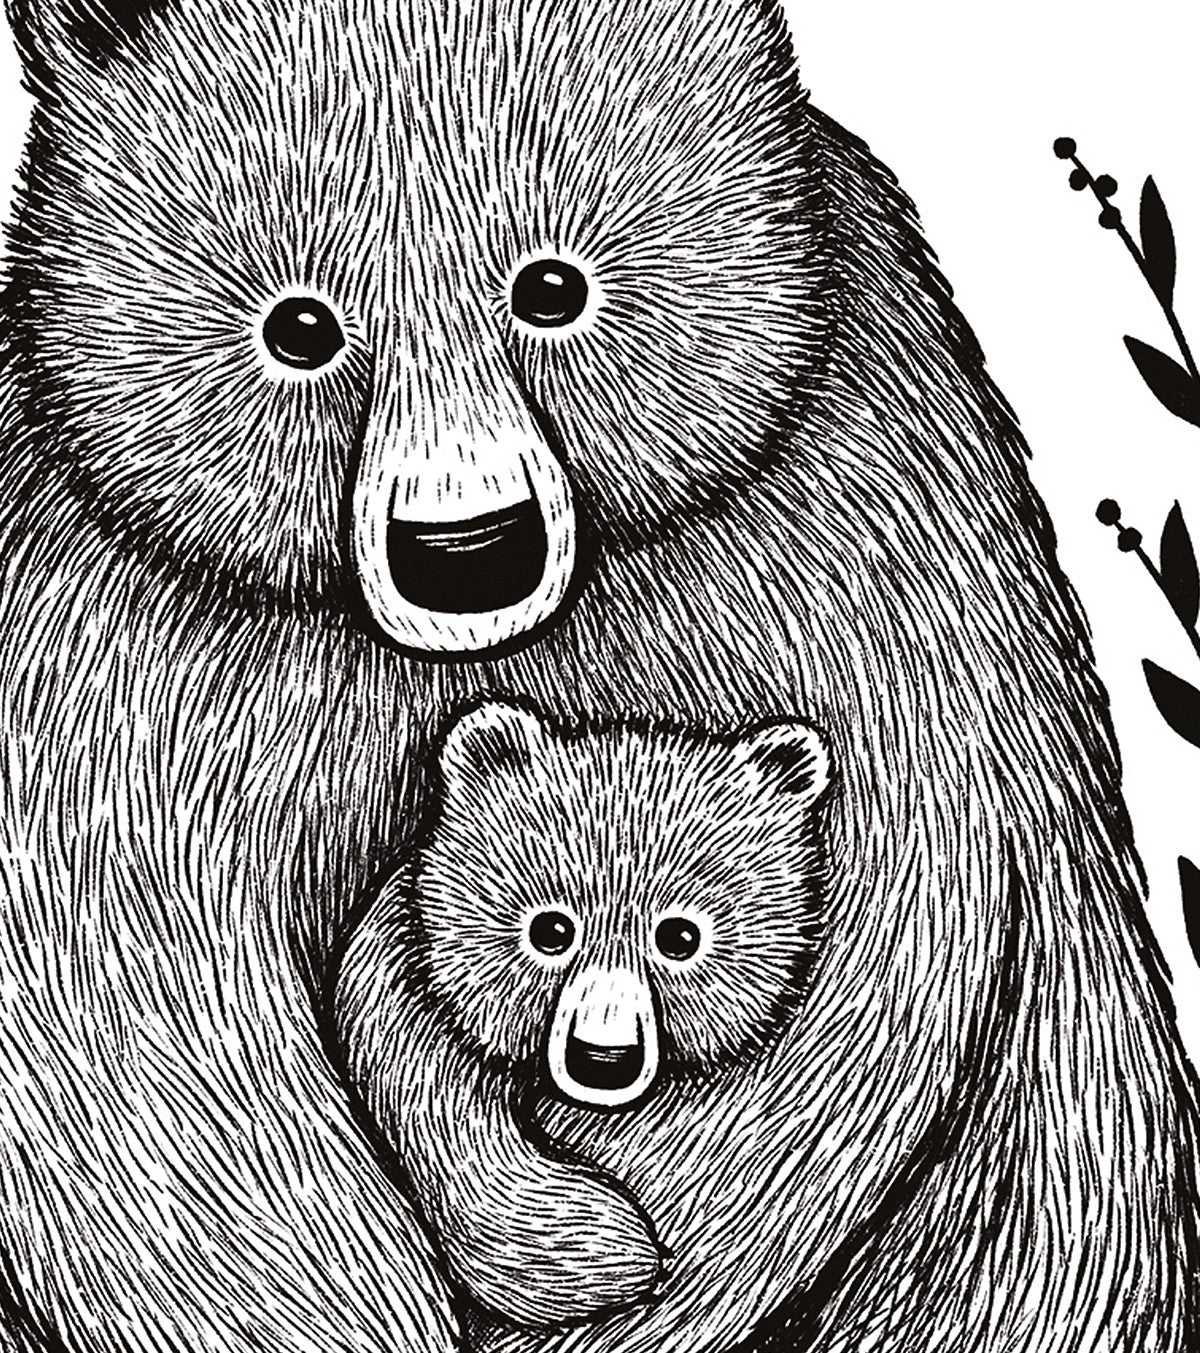 ROMANIAN HILLS - Poster per bambini - Famiglia di orsi